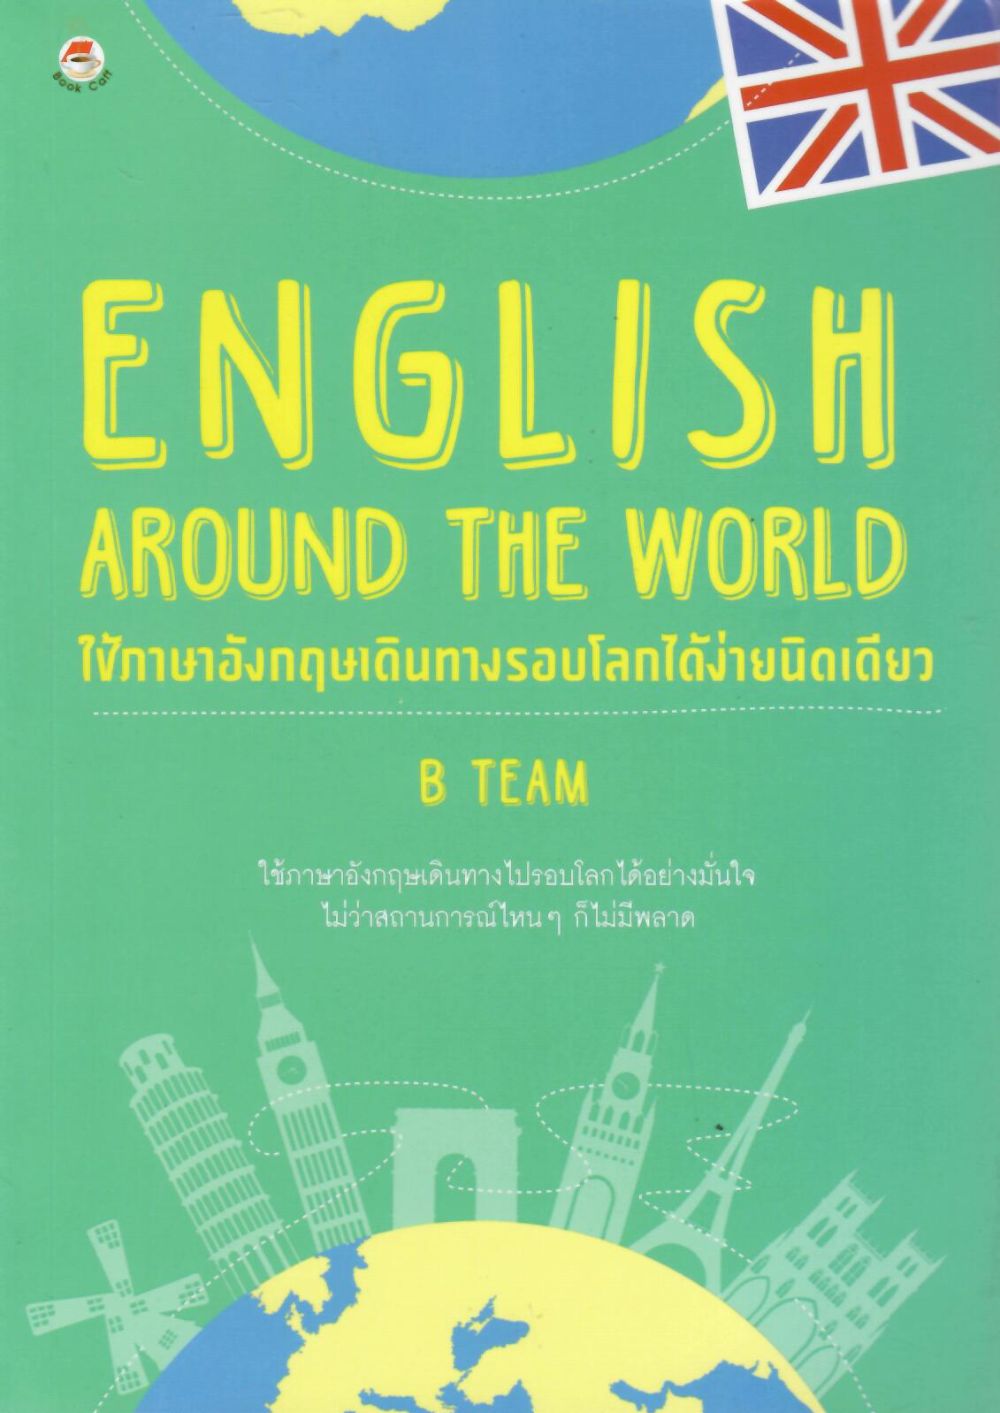 English around the world ใช้ภาษาอังกฤษเดินทางรอบโลกได้ง่ายนิดเดียว/  B TEAM, ผู้เขียน ; จารุณี จันทร์ลอยนภา, บรรณาธิการ